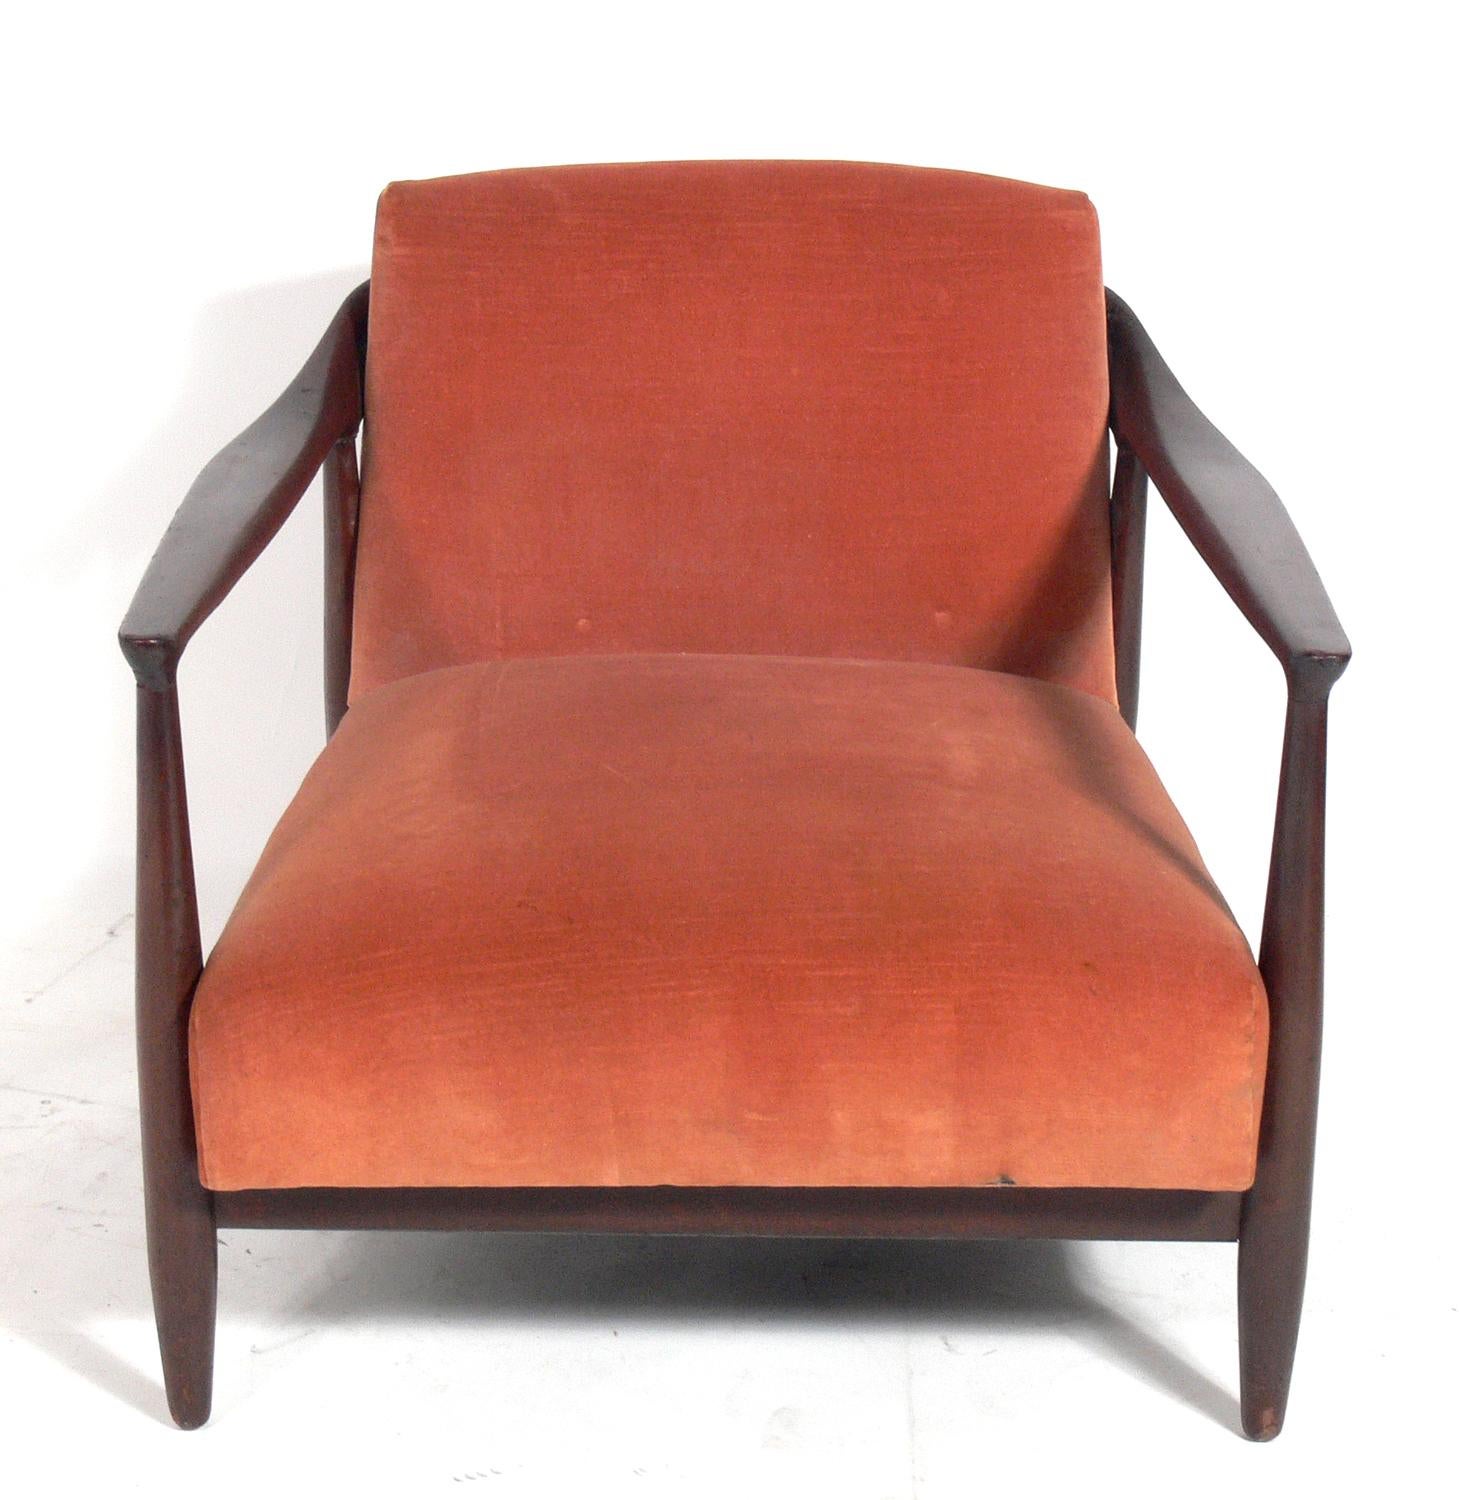 Niedriger, moderner dänischer Sessel von Ib Kofod-Larsen, Dänemark, ca. 1960er Jahre. Dieser Stuhl wird derzeit aufgearbeitet und neu gepolstert. Der unten angegebene Preis beinhaltet die Aufarbeitung und Neupolsterung in Ihrem Stoff. Senden Sie uns